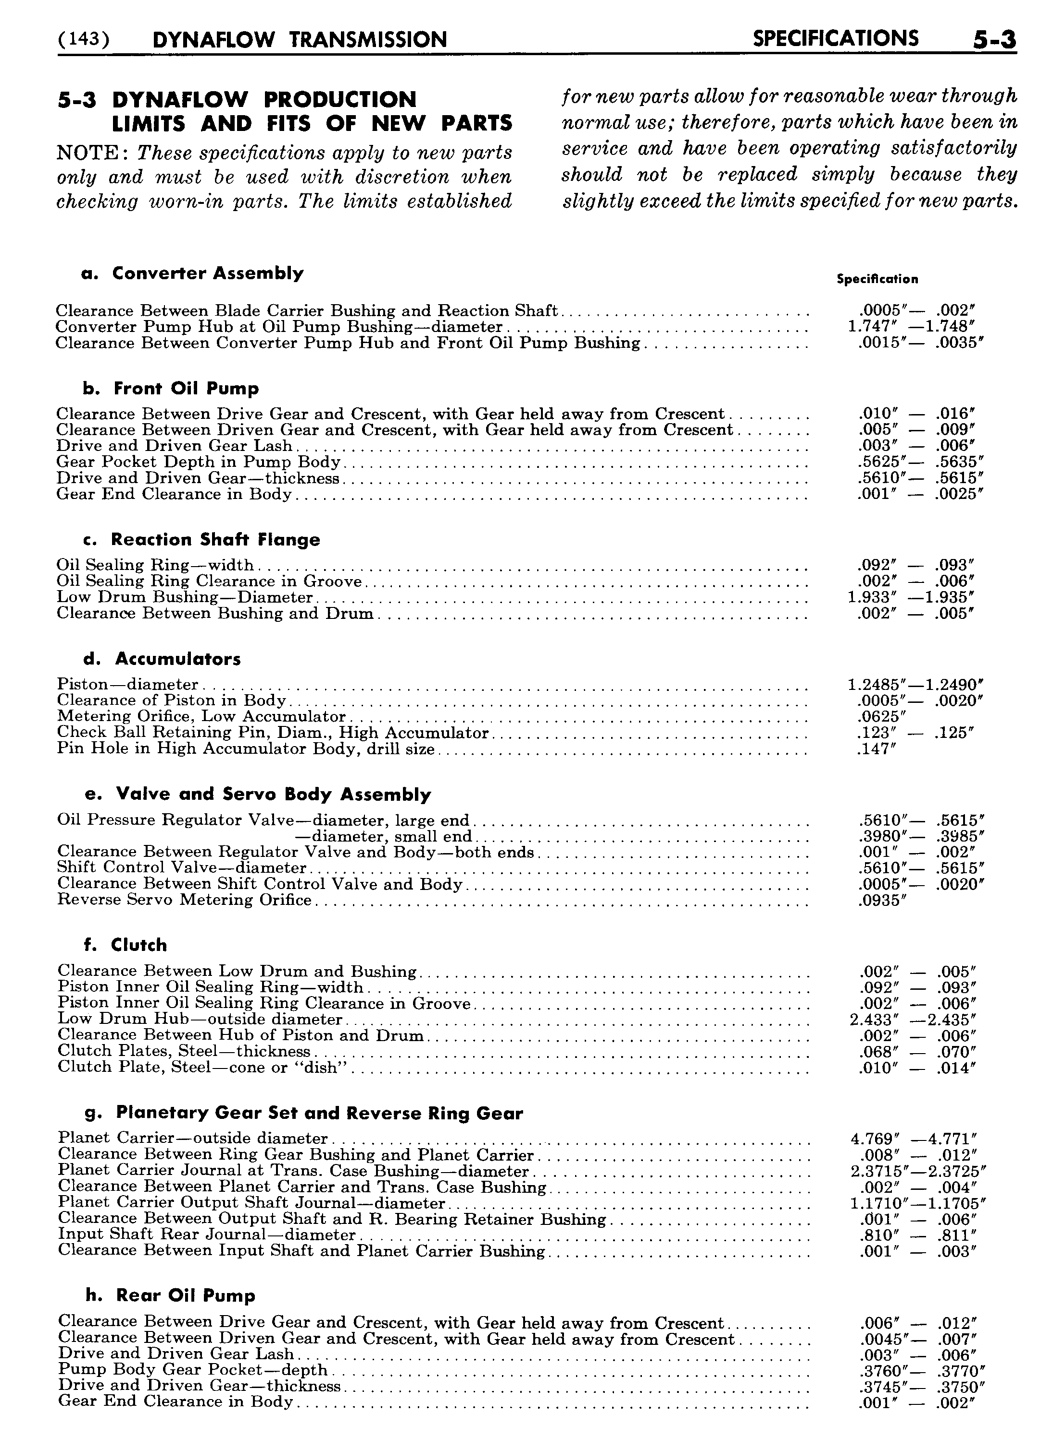 n_06 1955 Buick Shop Manual - Dynaflow-003-003.jpg